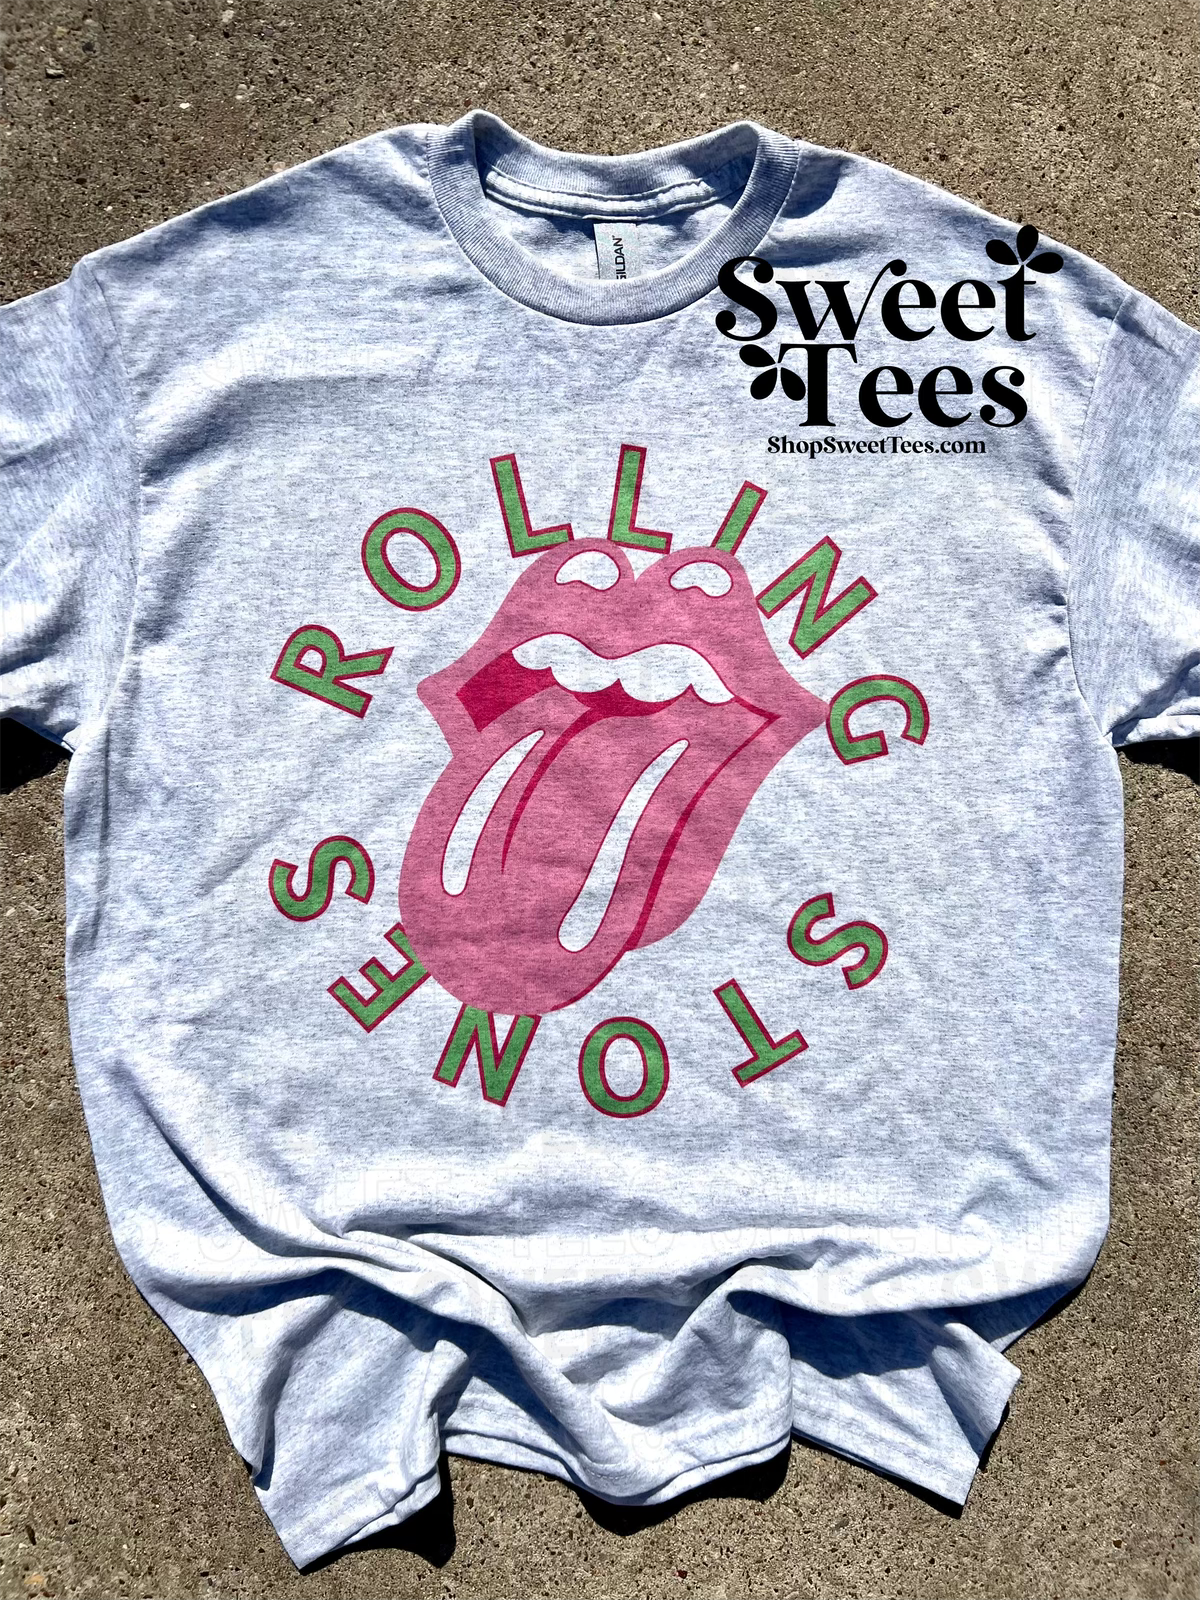 Neon Rolling Stones tee